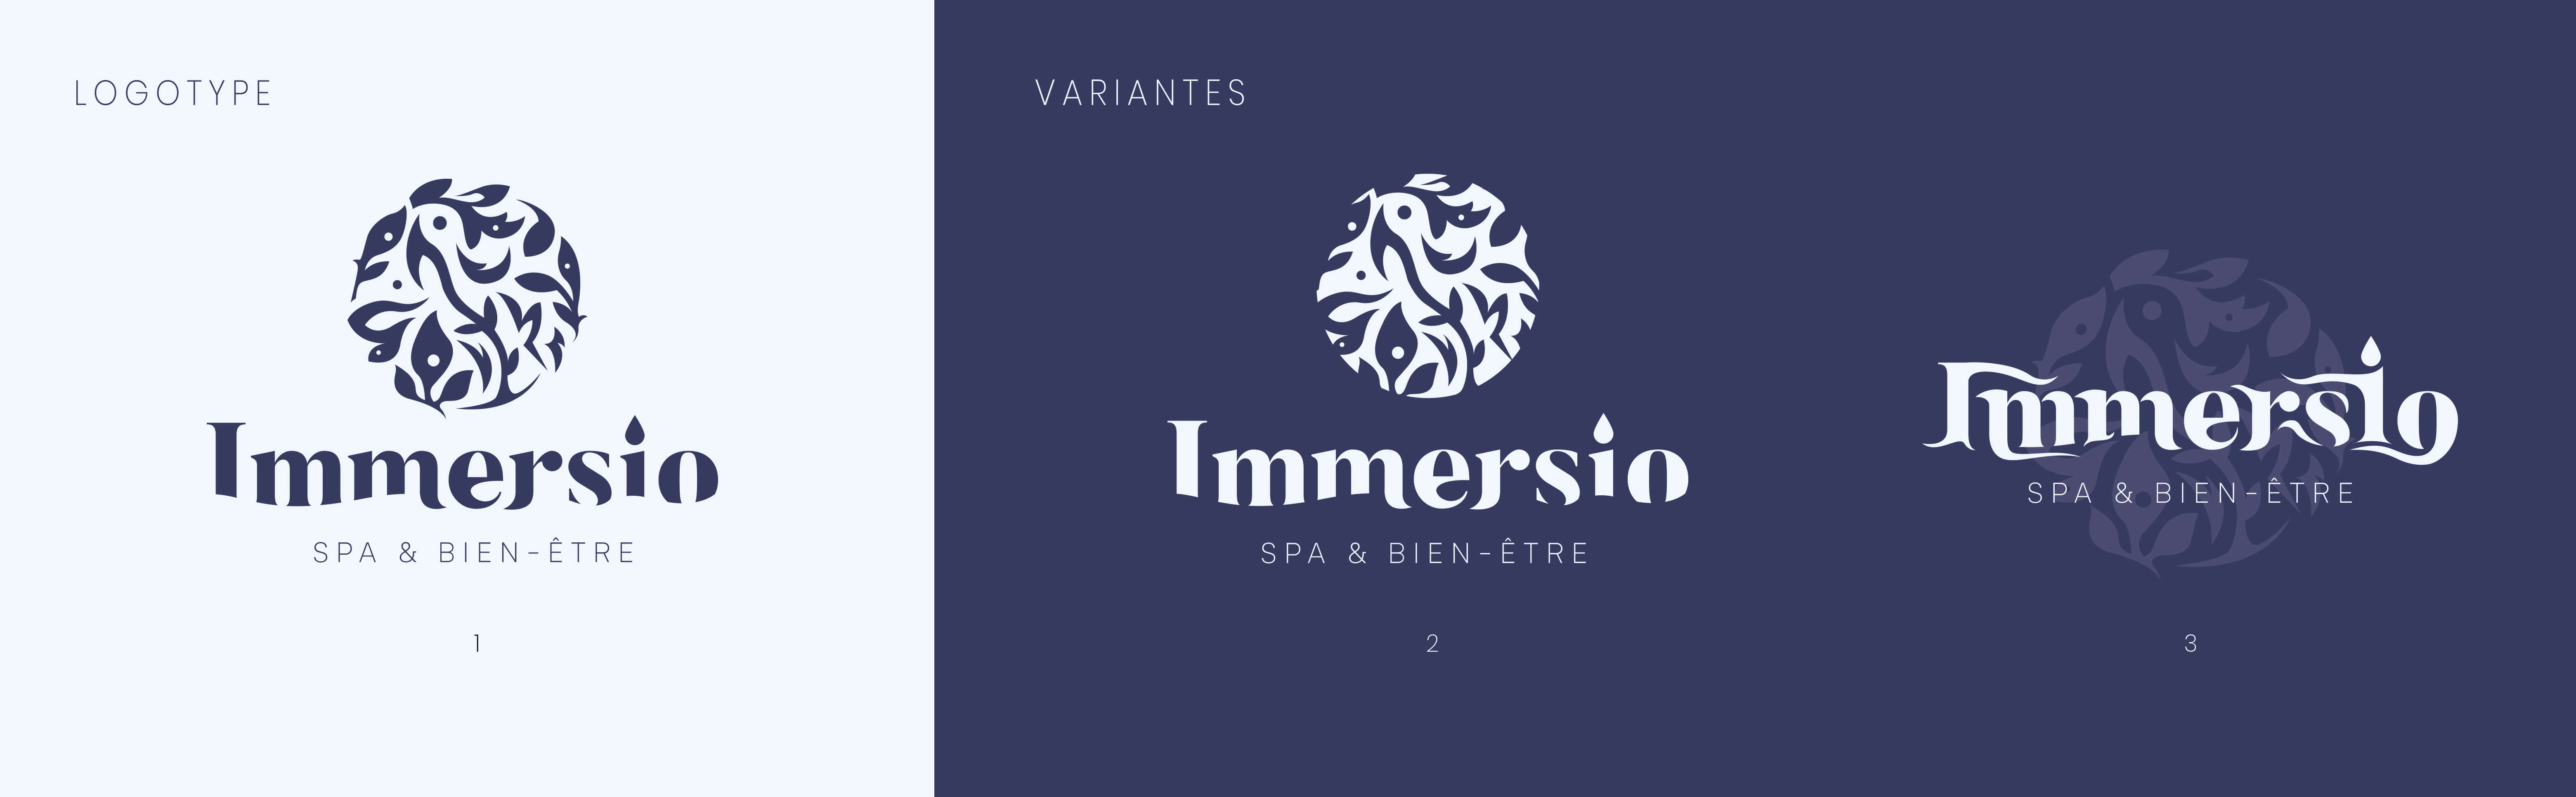 Proposition de logotypes pour Immersio